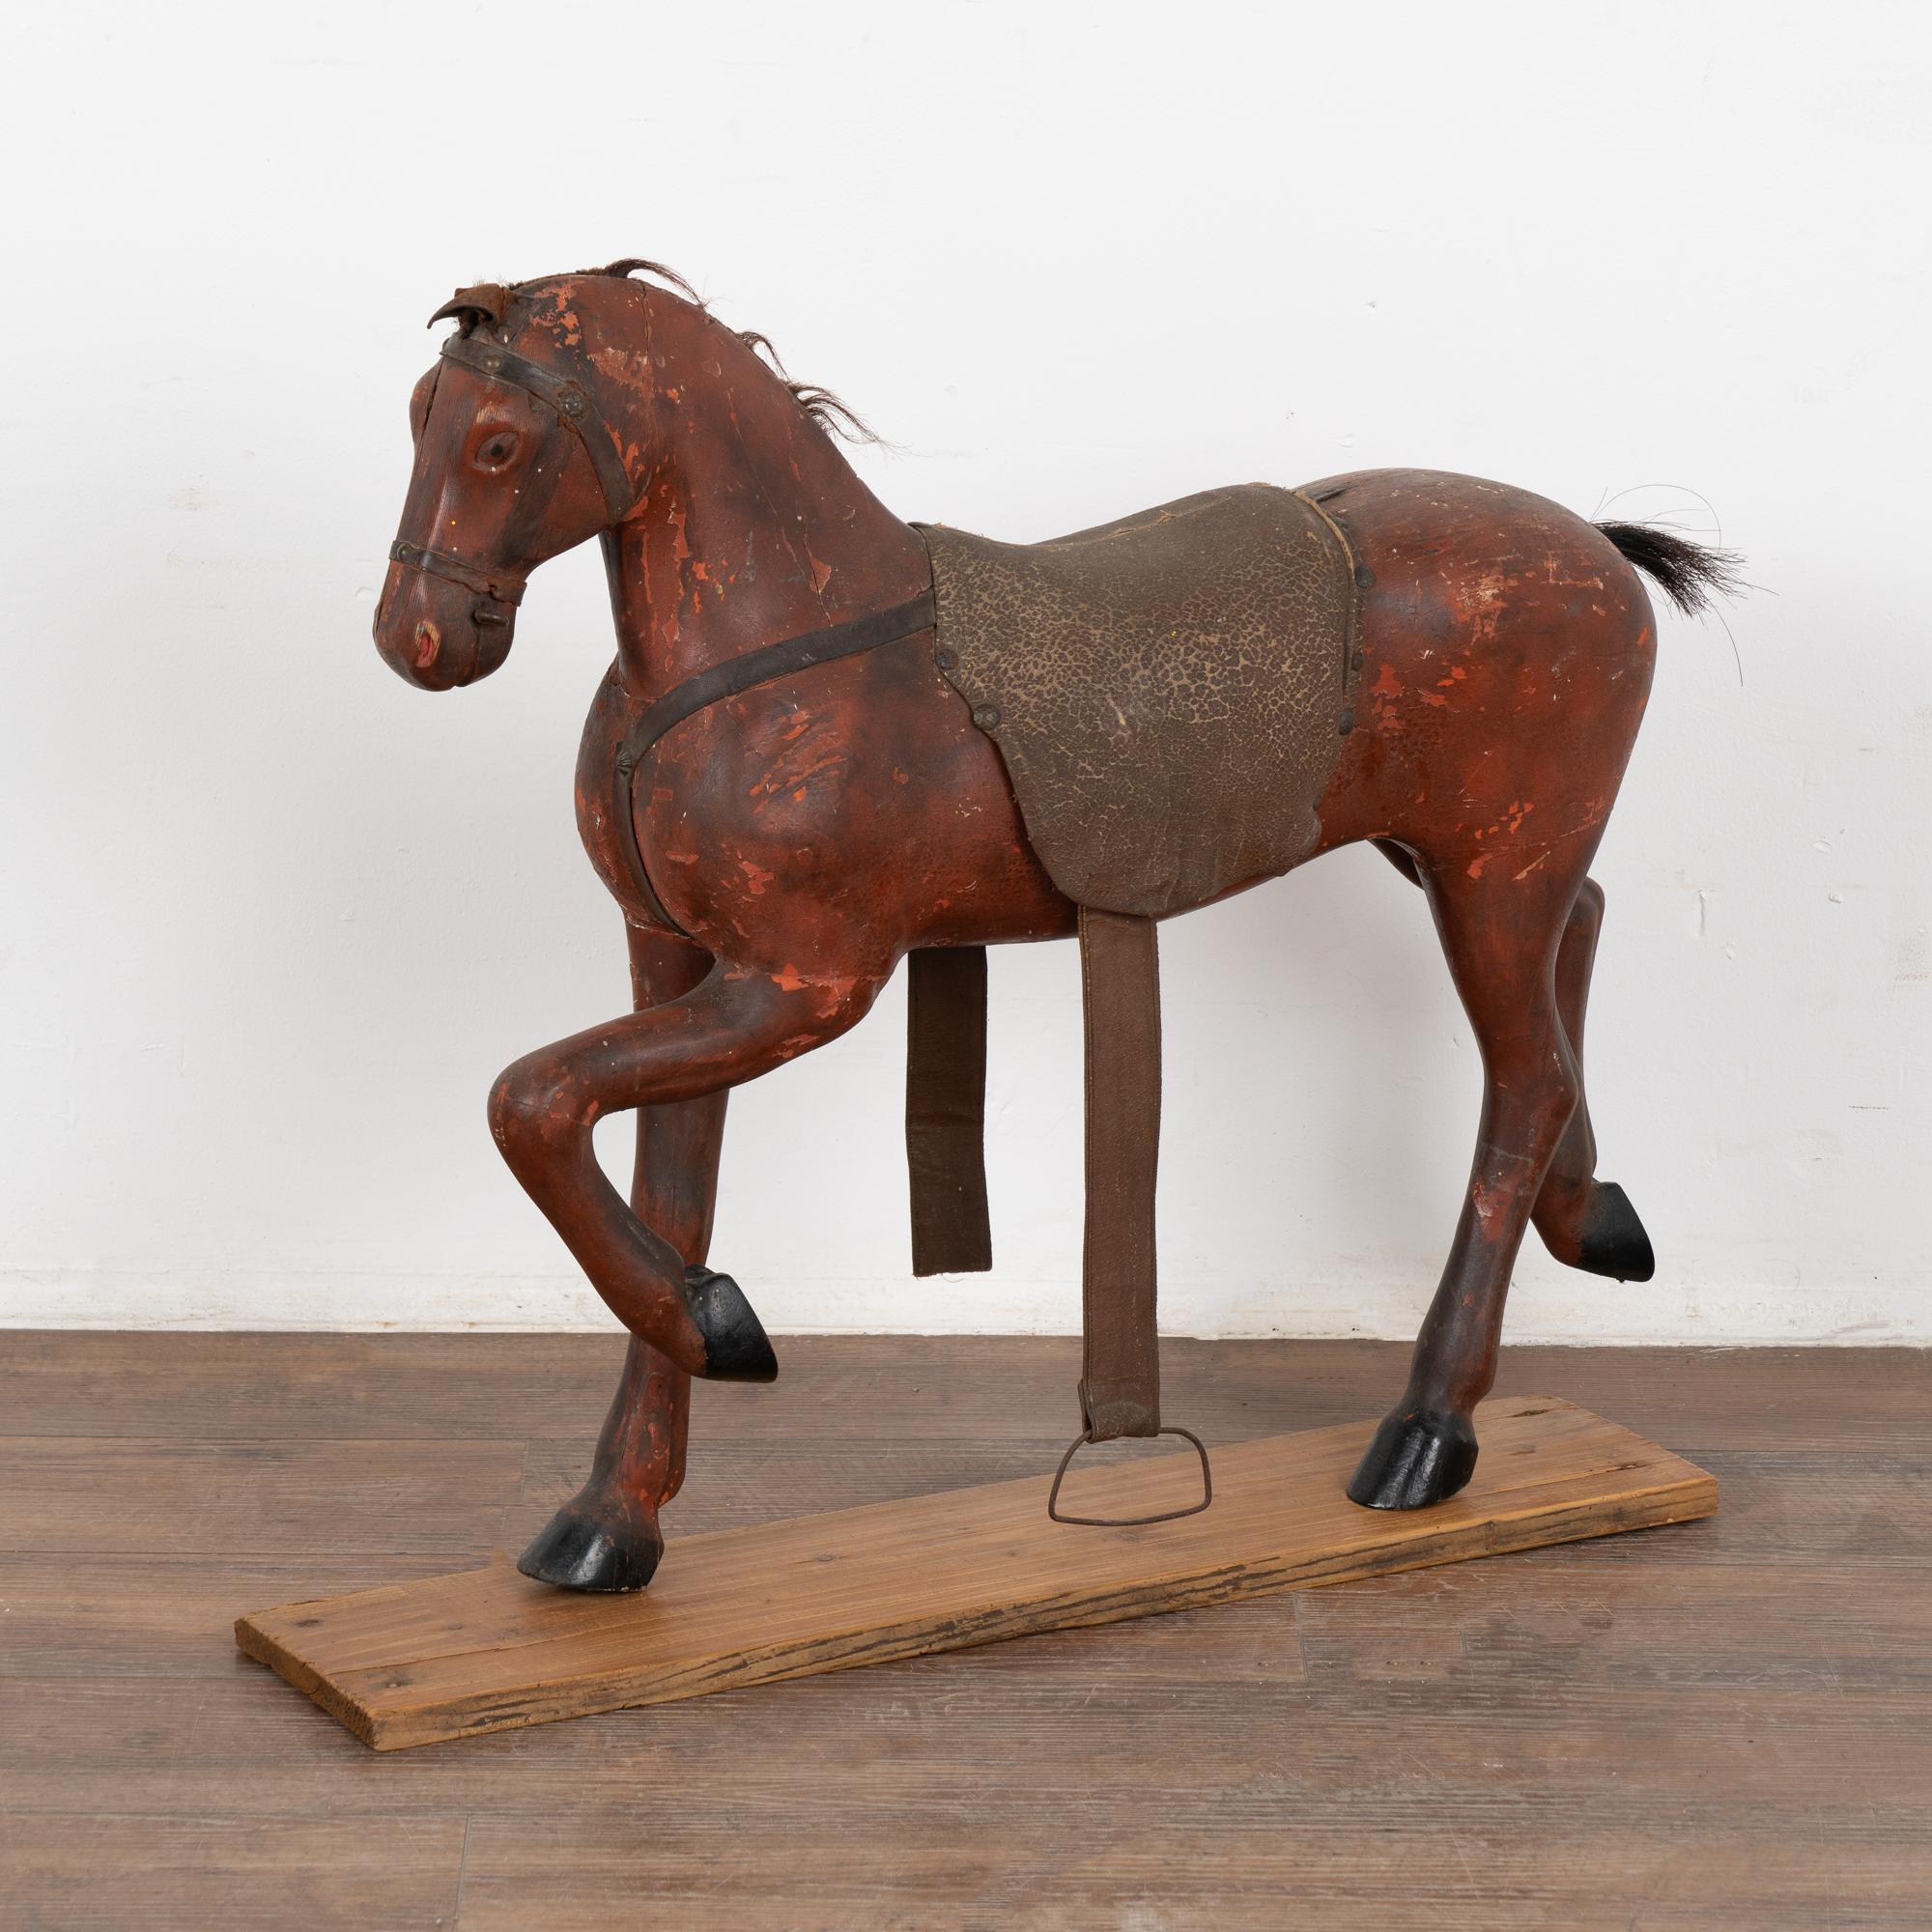 C'est l'aspect très usé de ce cheval original peint et sculpté, originaire de Suède, qui lui confère son attrait. 
La peinture rouge brique est écaillée et abîmée, tandis que les oreilles en cuir en lambeaux, les parties manquantes de la bride et